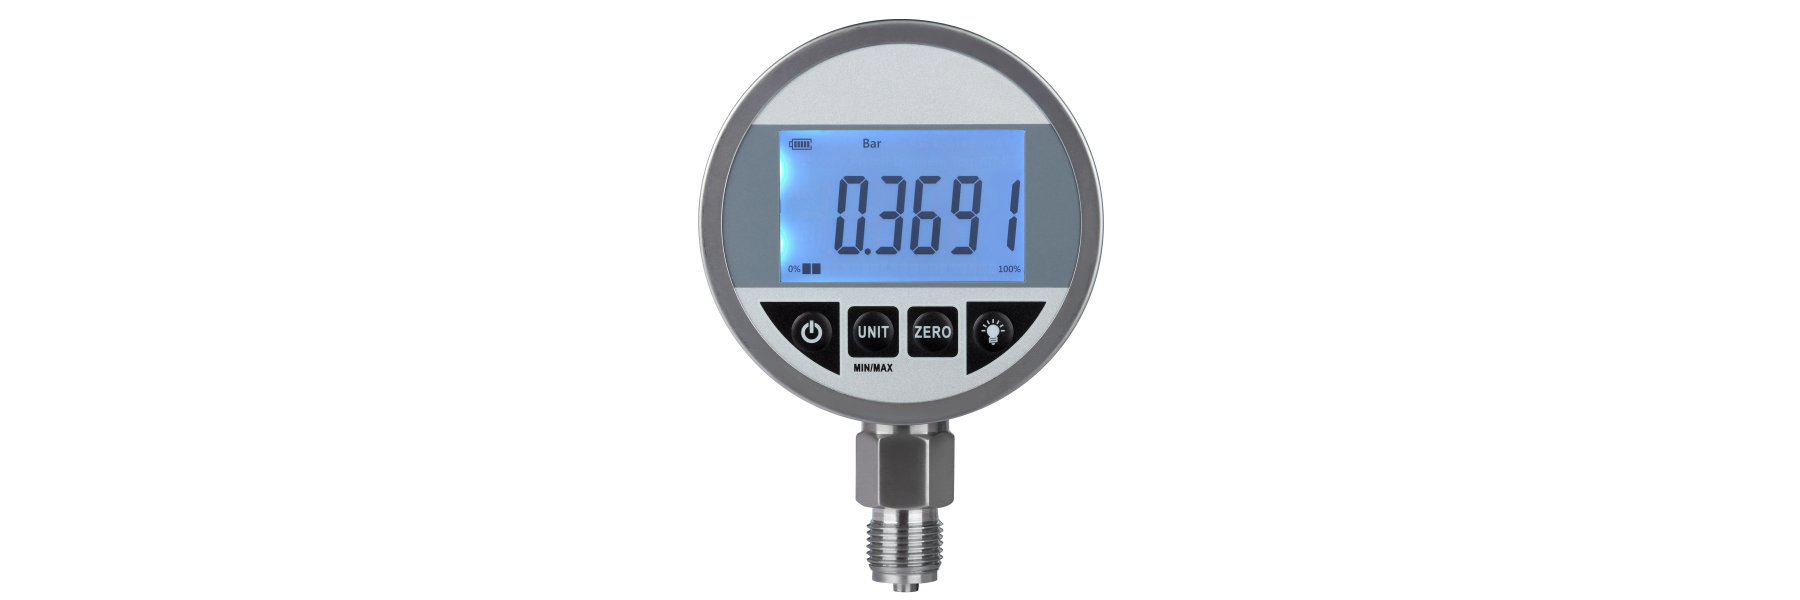 Dekostop GmbH OnlineShop - für technische und anspruchsvolle Taucher -  Digitales Manometer MK2 O2-Service mit ext. Sensor G1/4“M 100mm 0.5%  0400bar